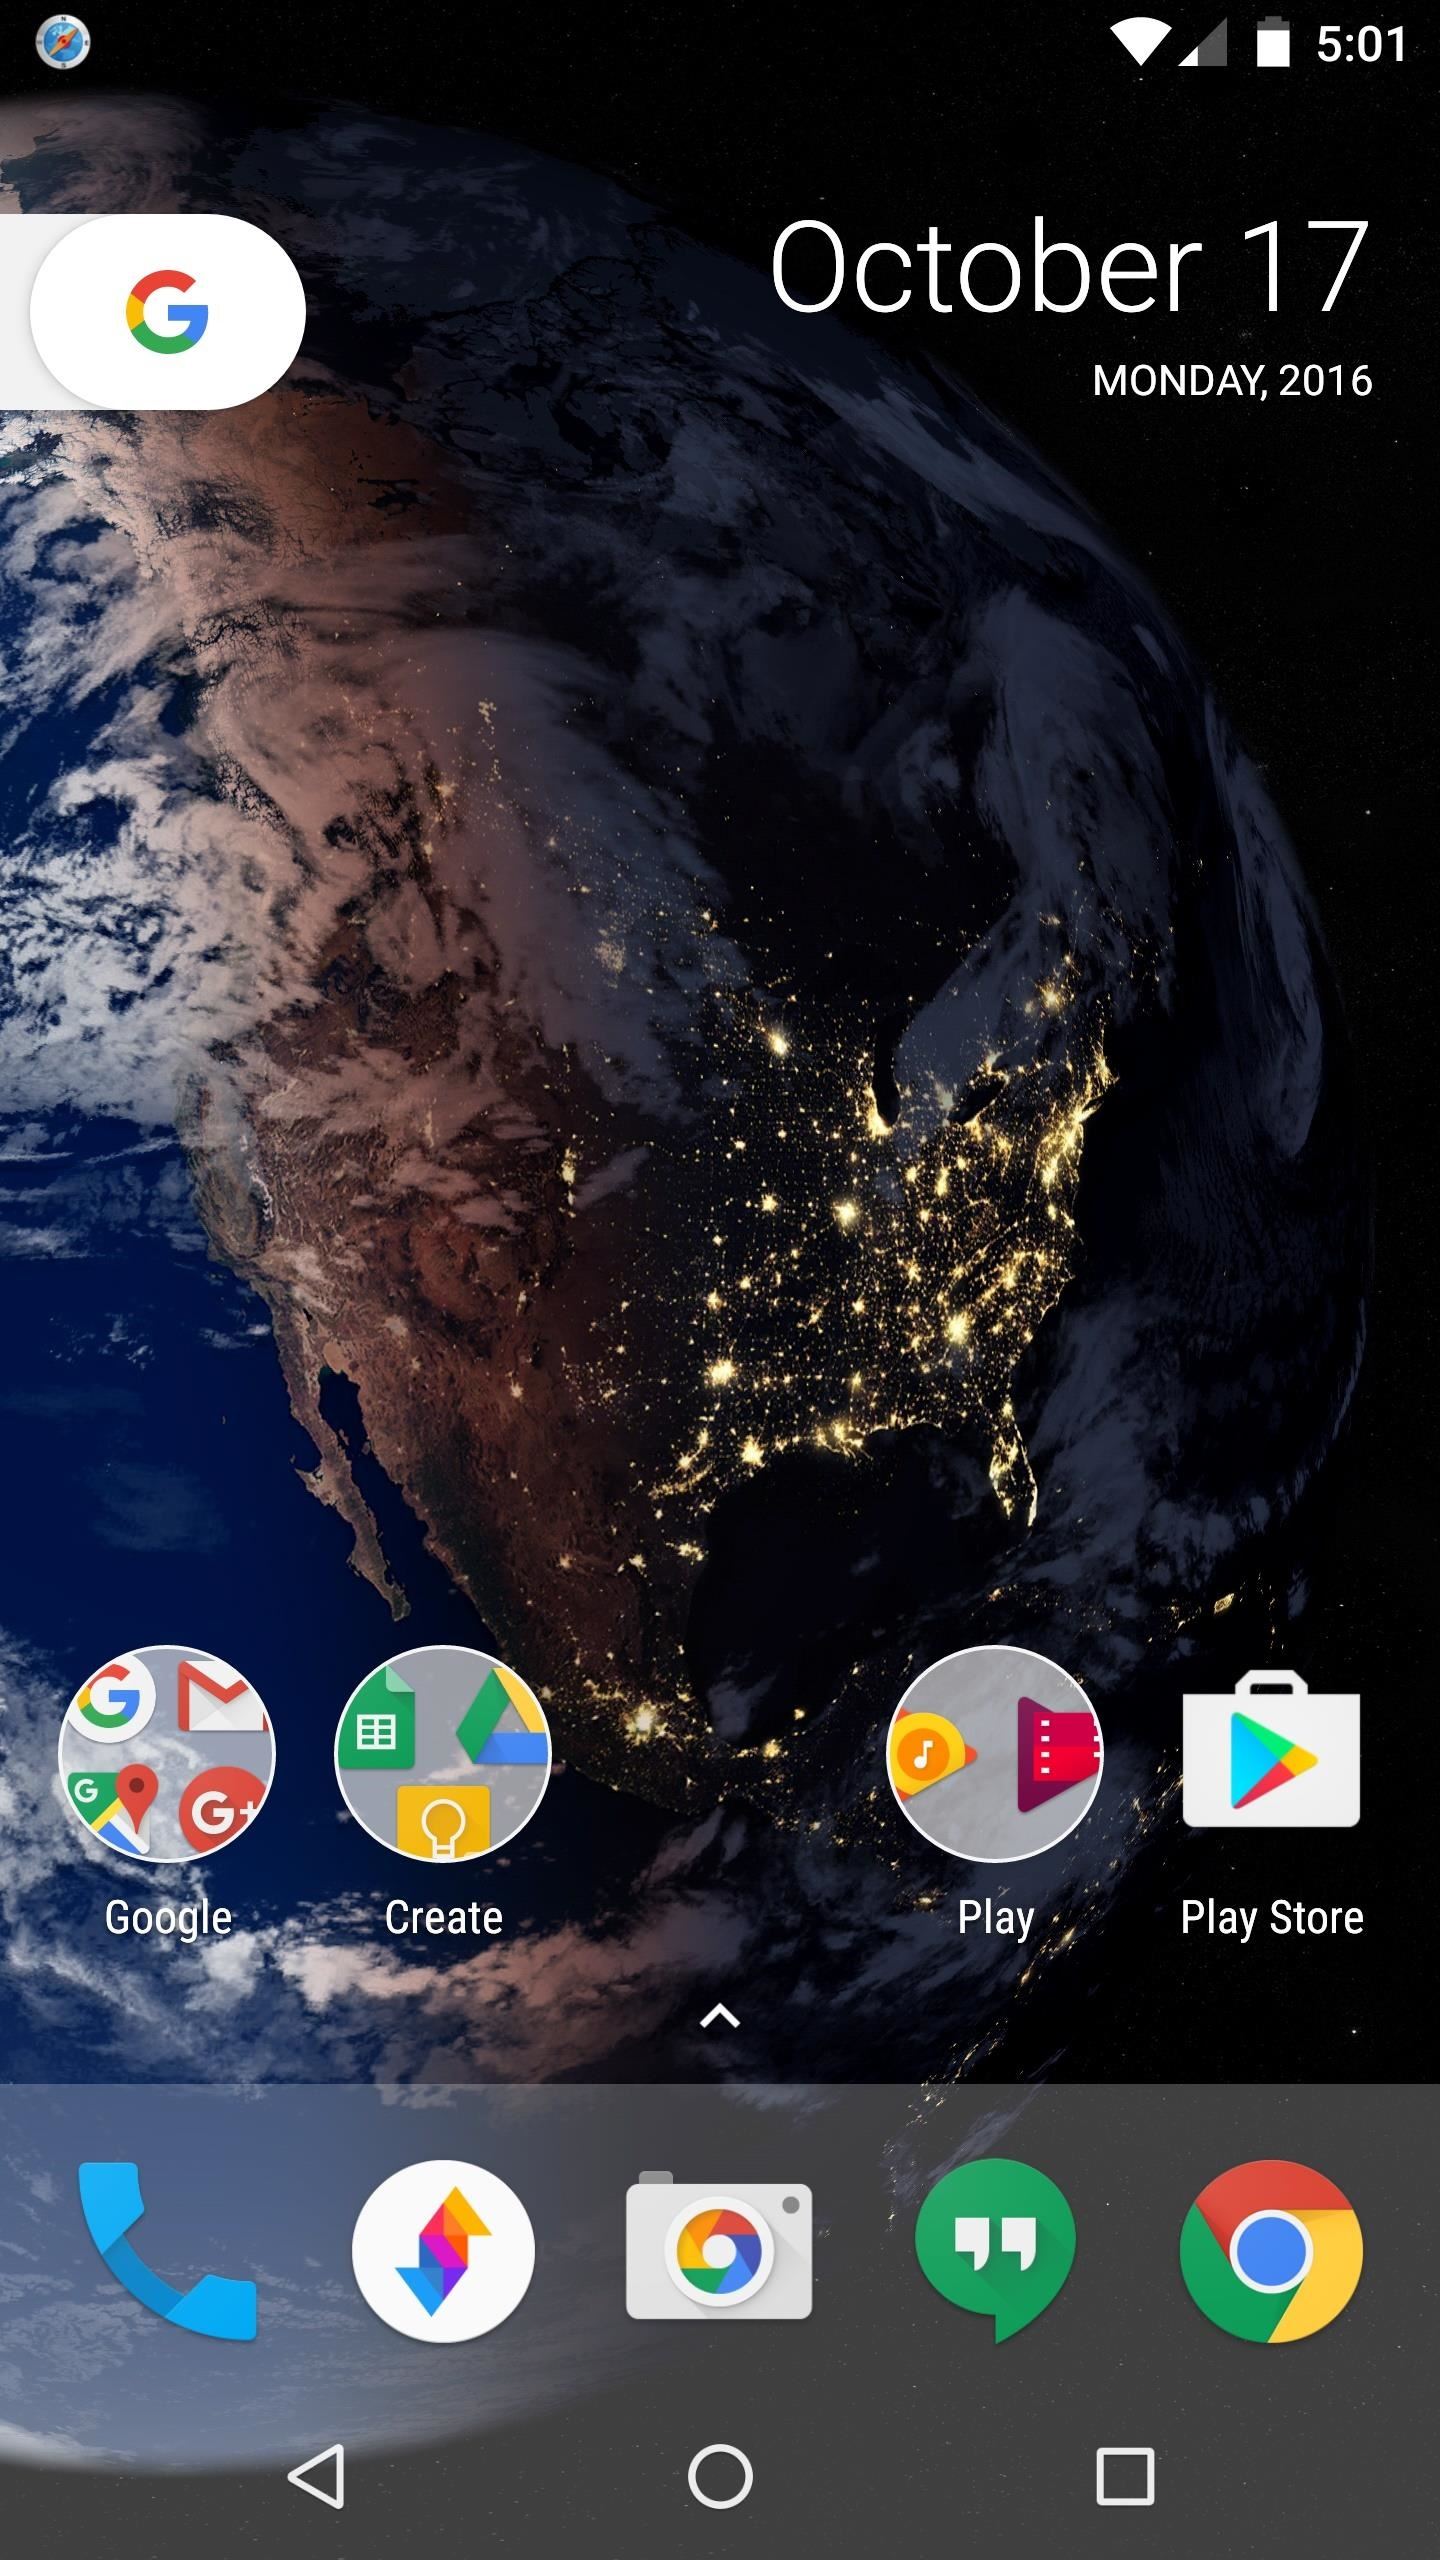 google pixel wallpaper,screenshot,sky,technology,smartphone,gadget